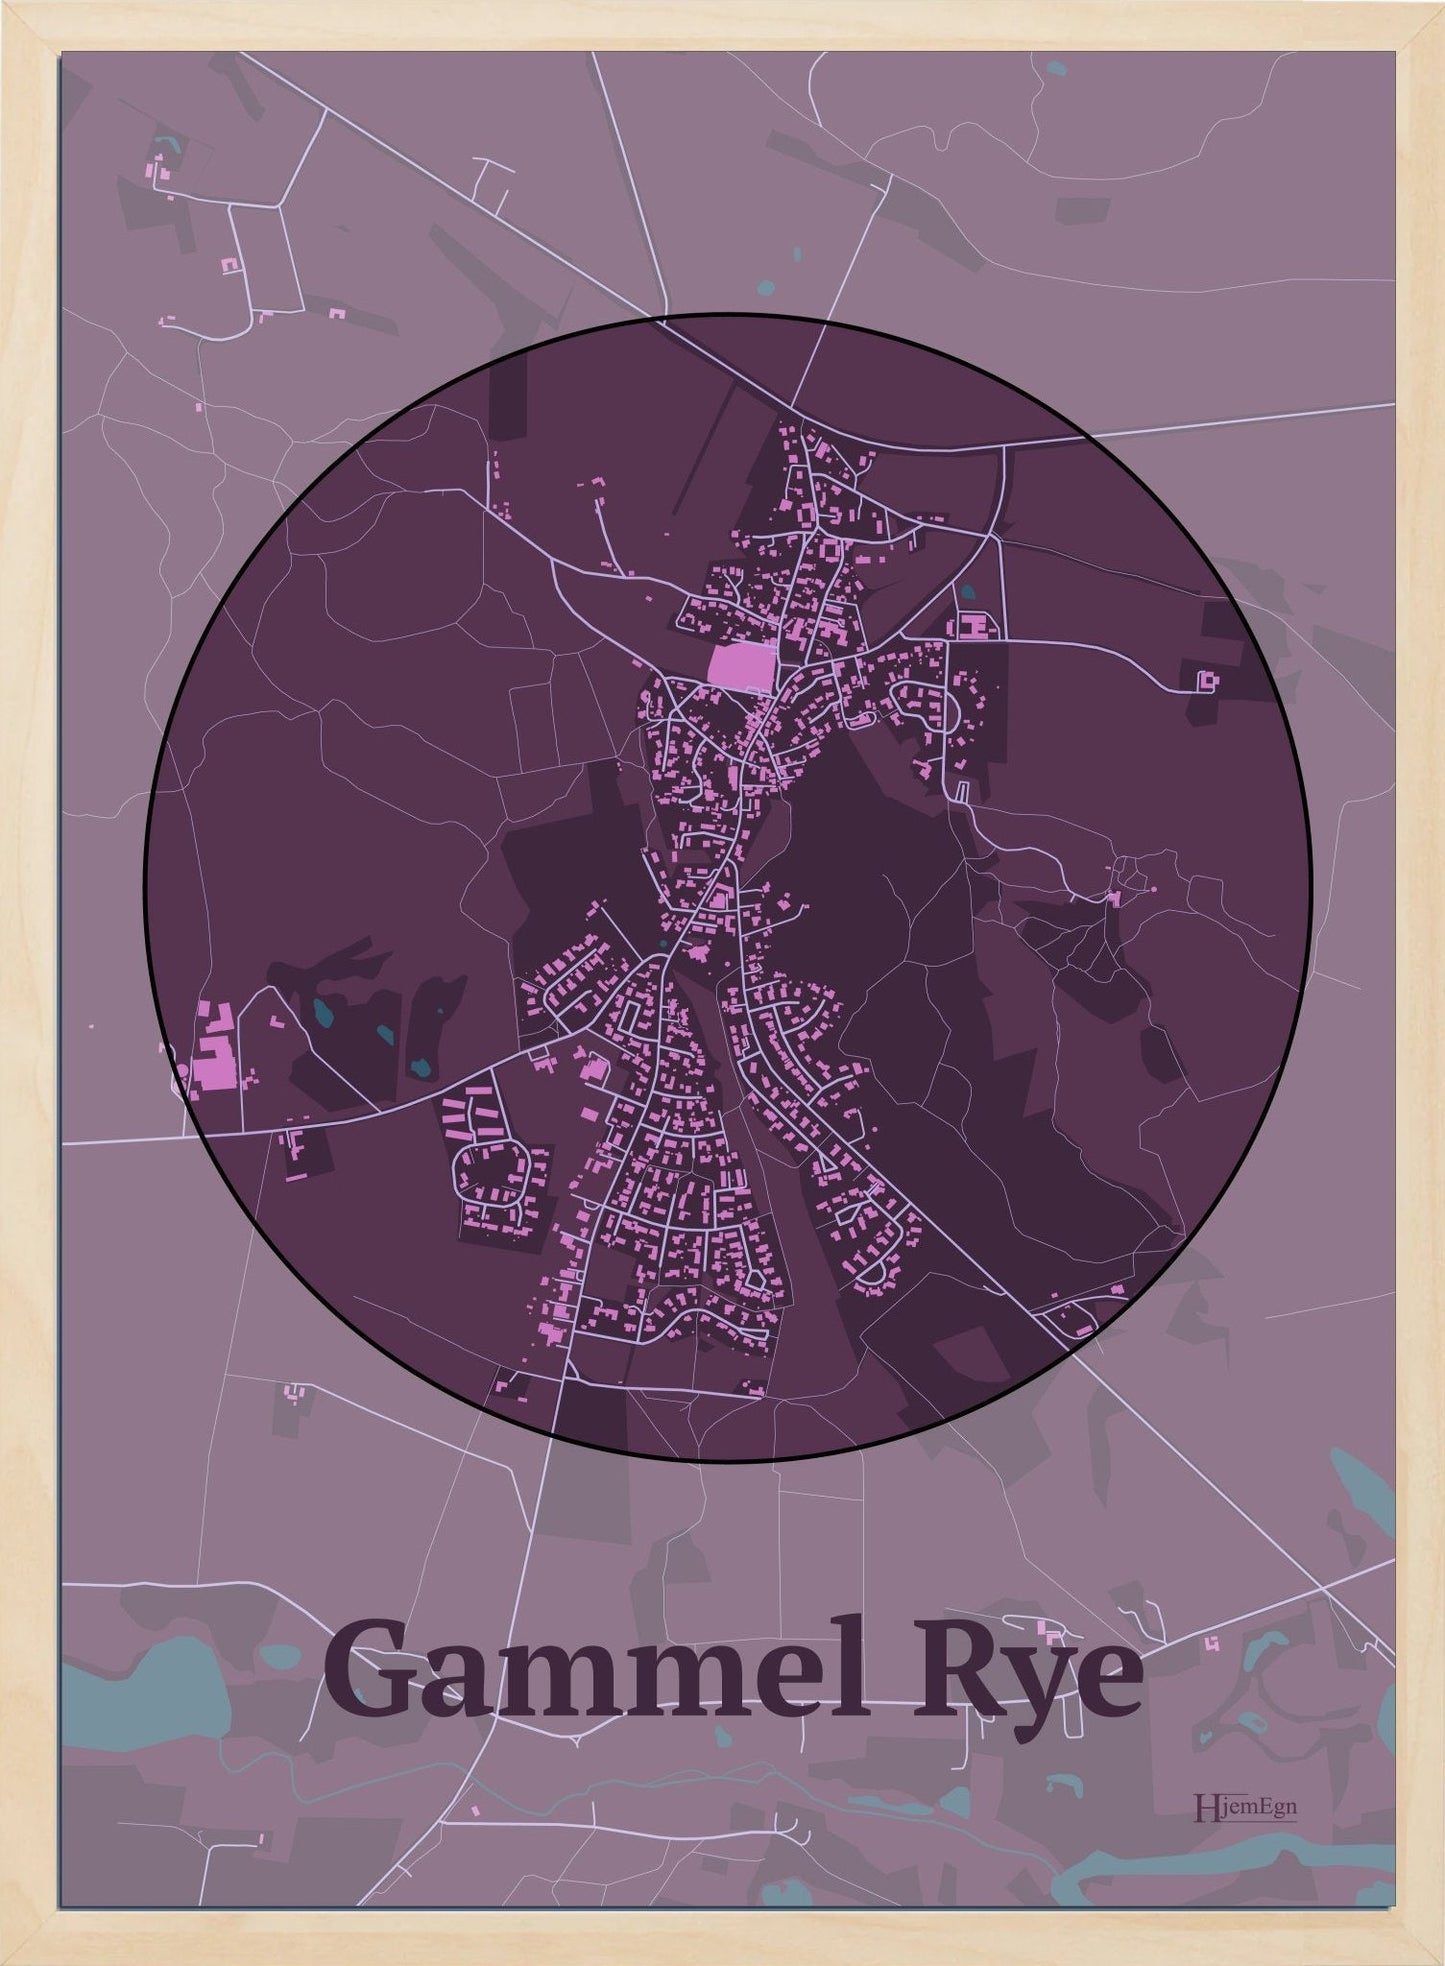 Gammel Rye plakat i farve mørk rød og HjemEgn.dk design centrum. Design bykort for Gammel Rye